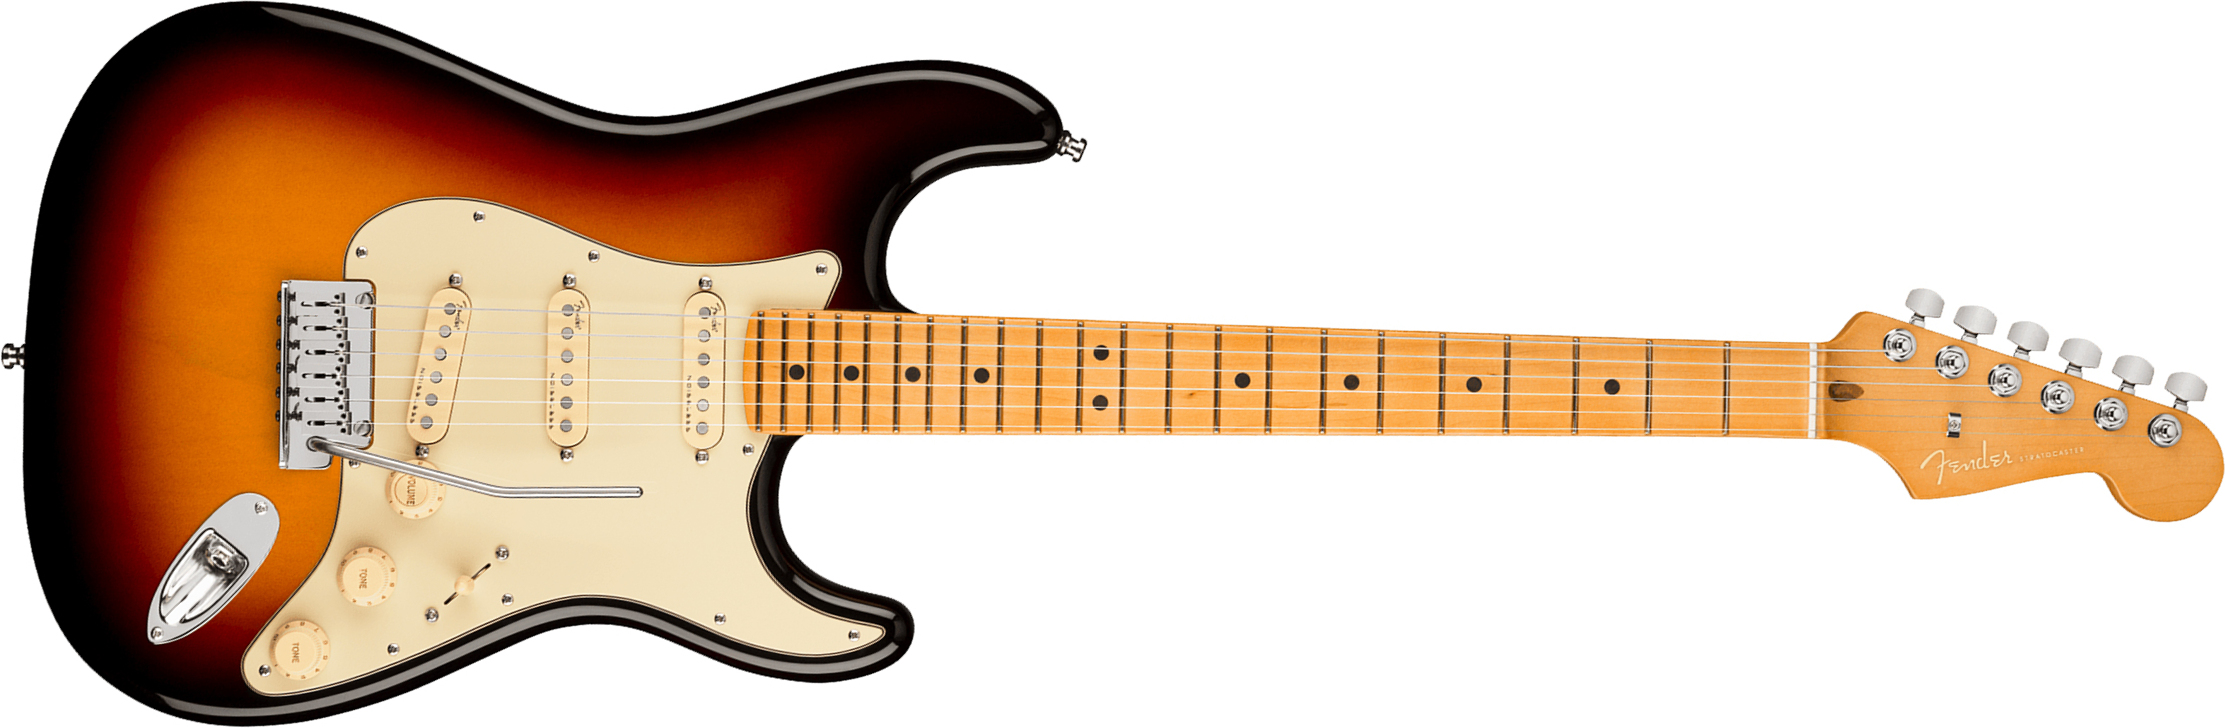 Fender Strat American Ultra 2019 Usa Mn - Ultraburst - Elektrische gitaar in Str-vorm - Main picture